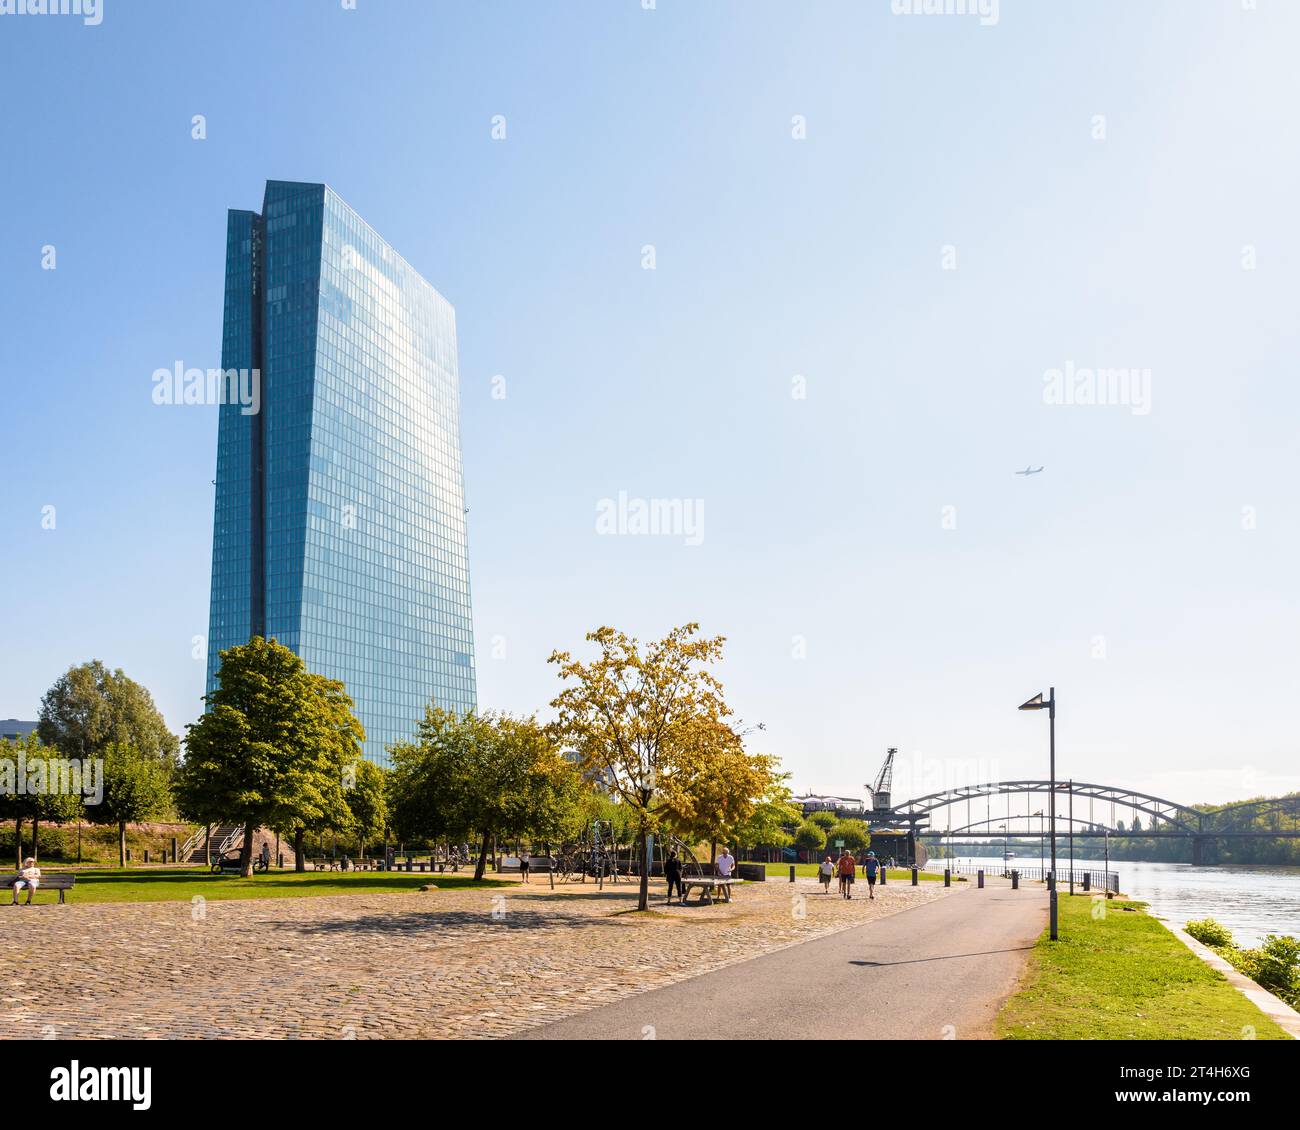 Vue générale du bâtiment Skytower à Francfort, Allemagne, siège de la Banque centrale européenne (BCE) depuis 2015, sur la rive droite du main. Banque D'Images